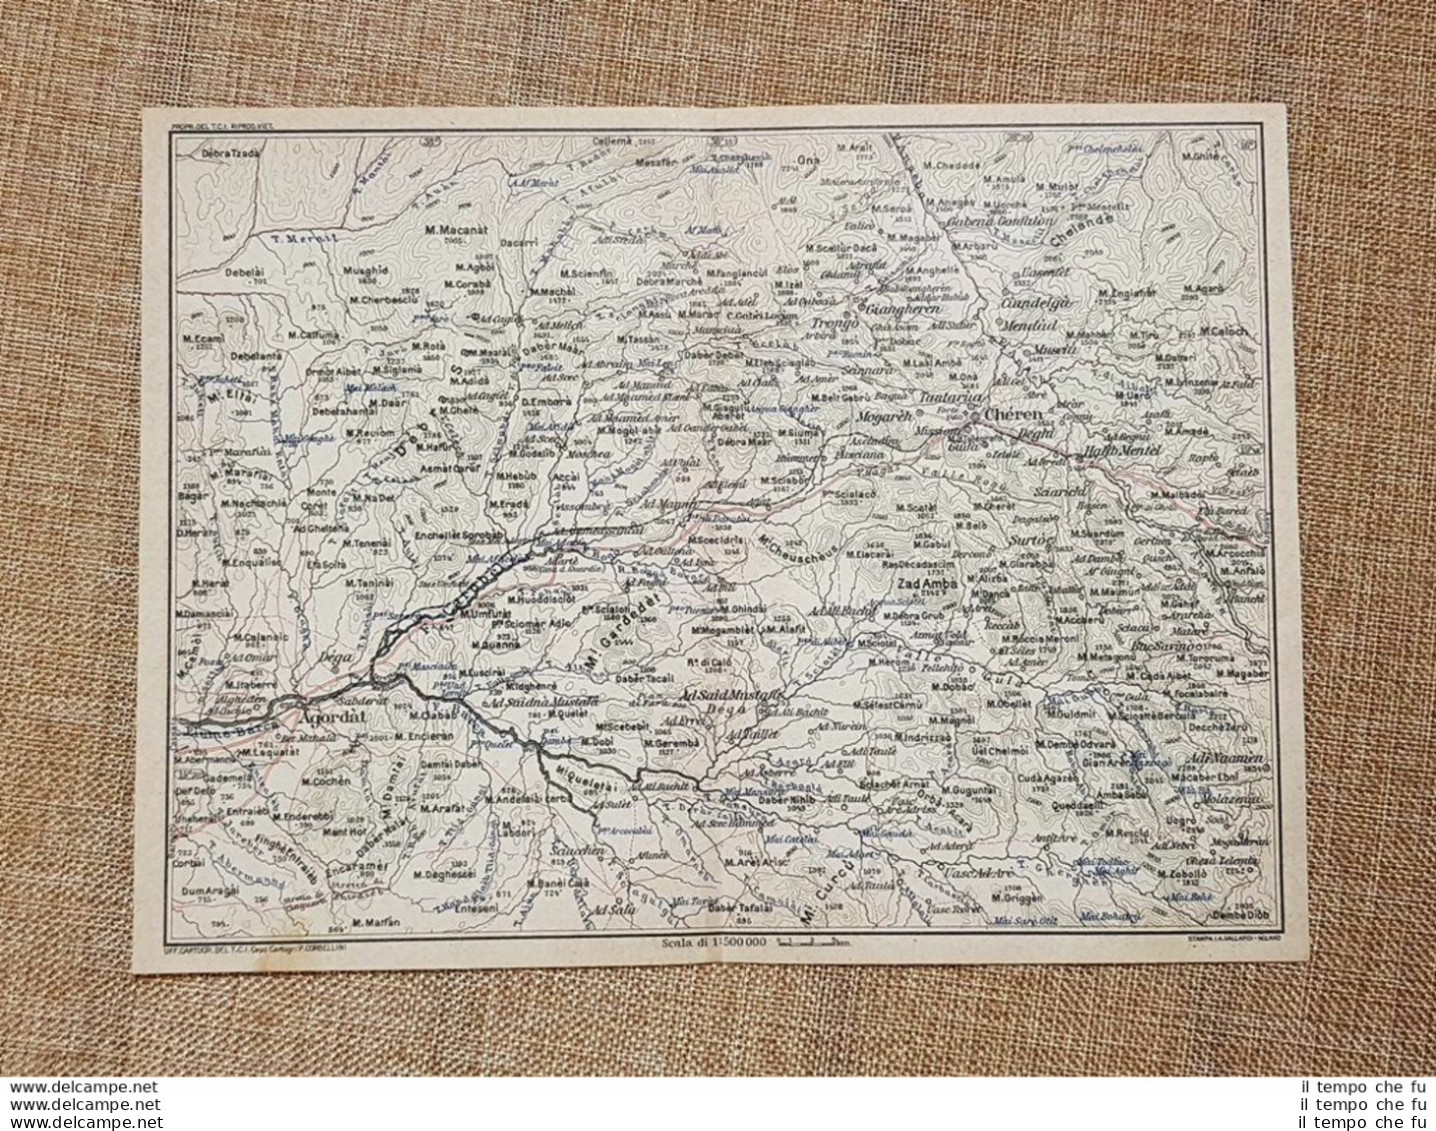 Carta Cartina Del 1929 Agordat O Curdèt Chèren Zad Ambà Ciandelgà Eritrea T.C.I. - Cartes Géographiques